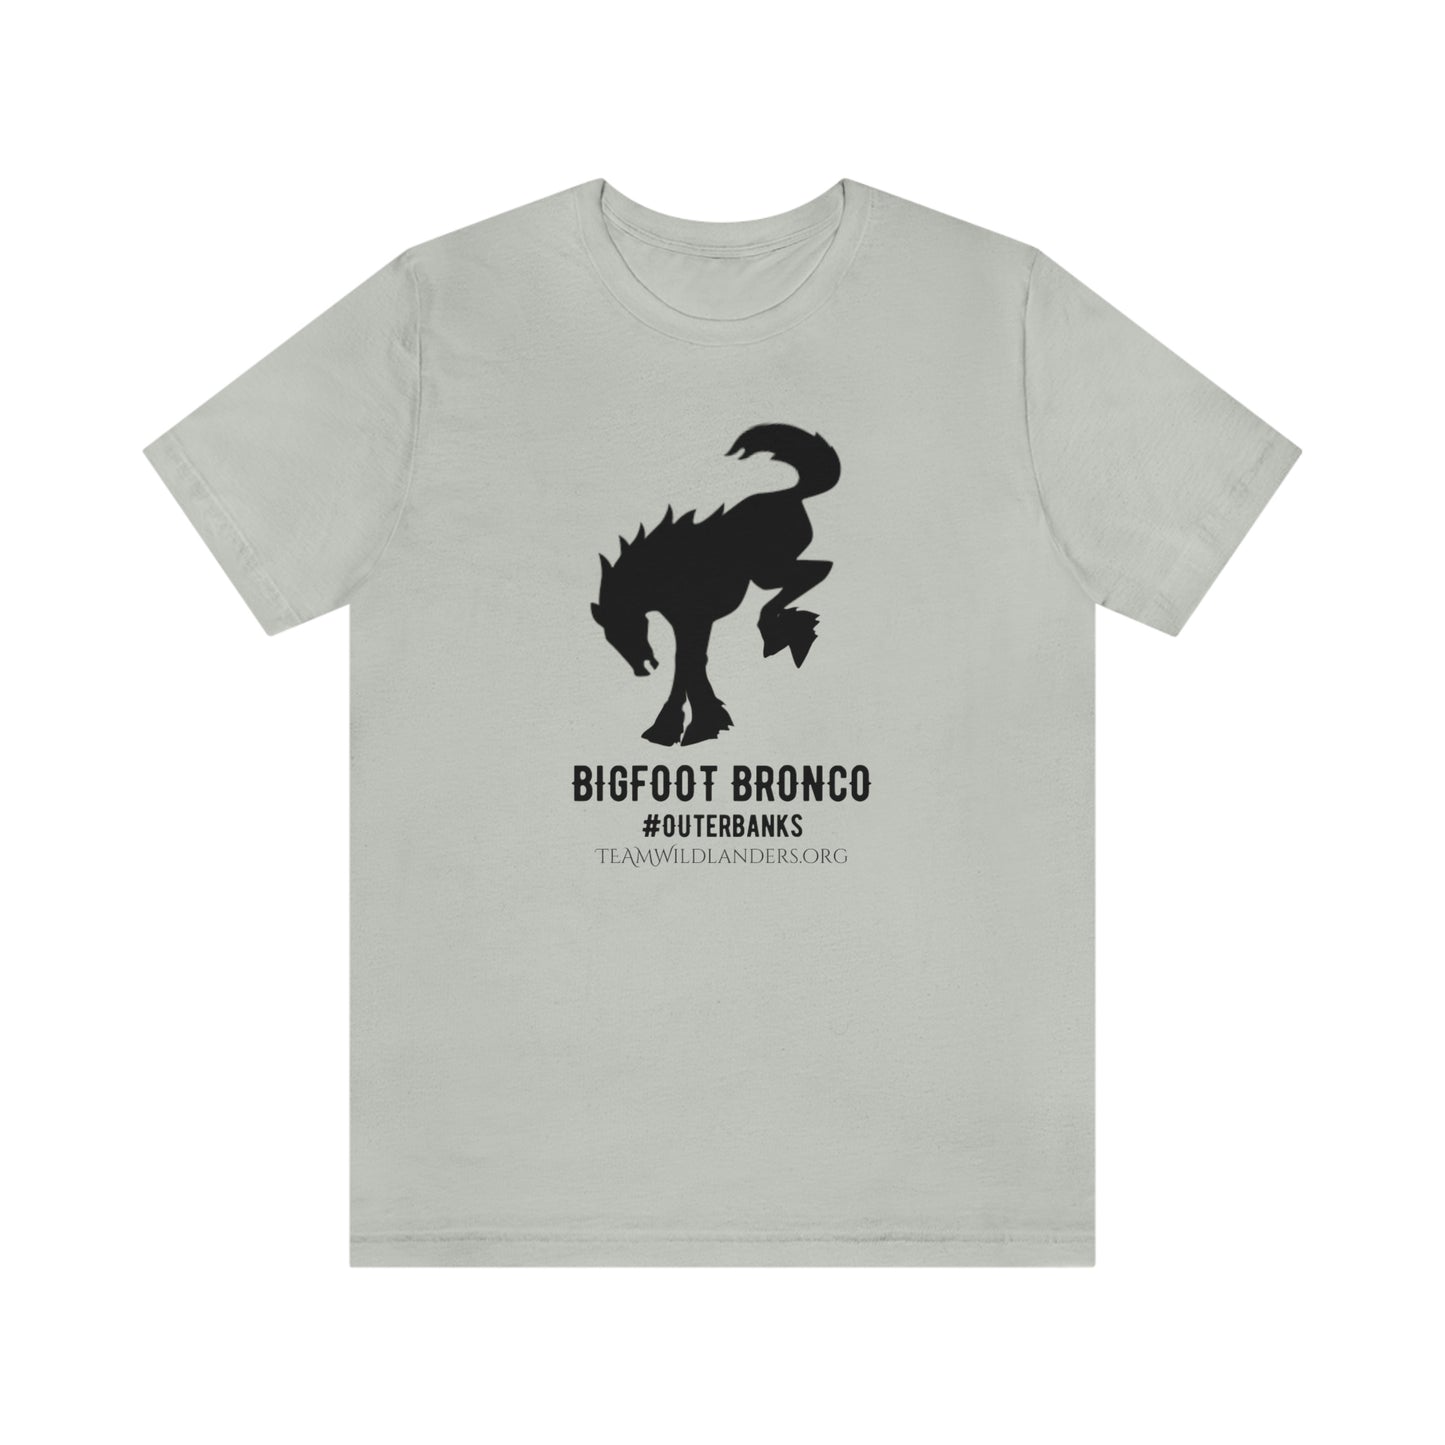 Bigfoot Bronco™ #OuterBanks Tee